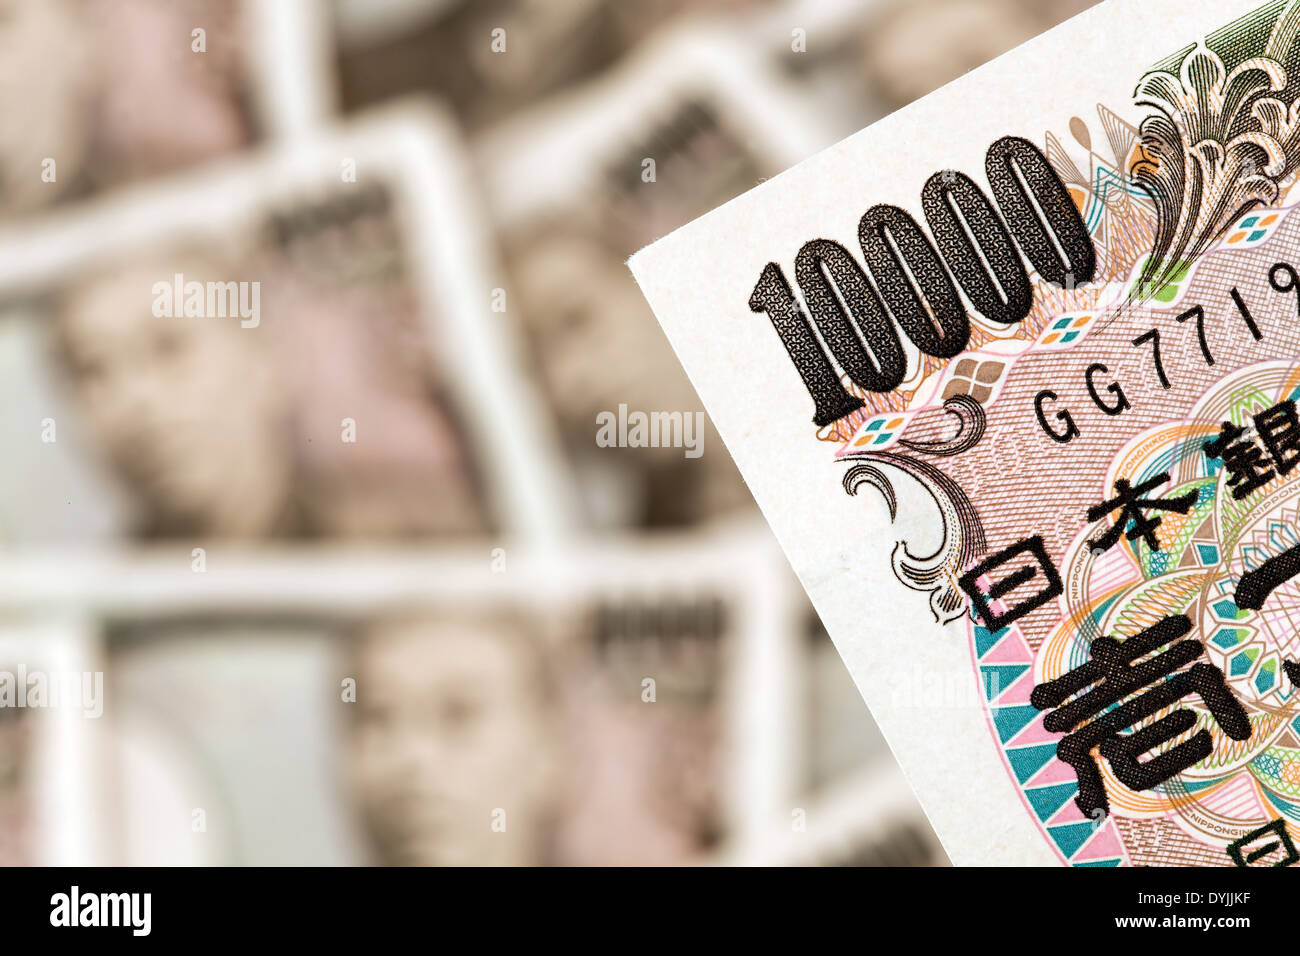 Japanische Yen Geldscheine. Geld aus Japan / Japanese yen notes. Money from Japan, Japanische Yen Geldscheine Stock Photo